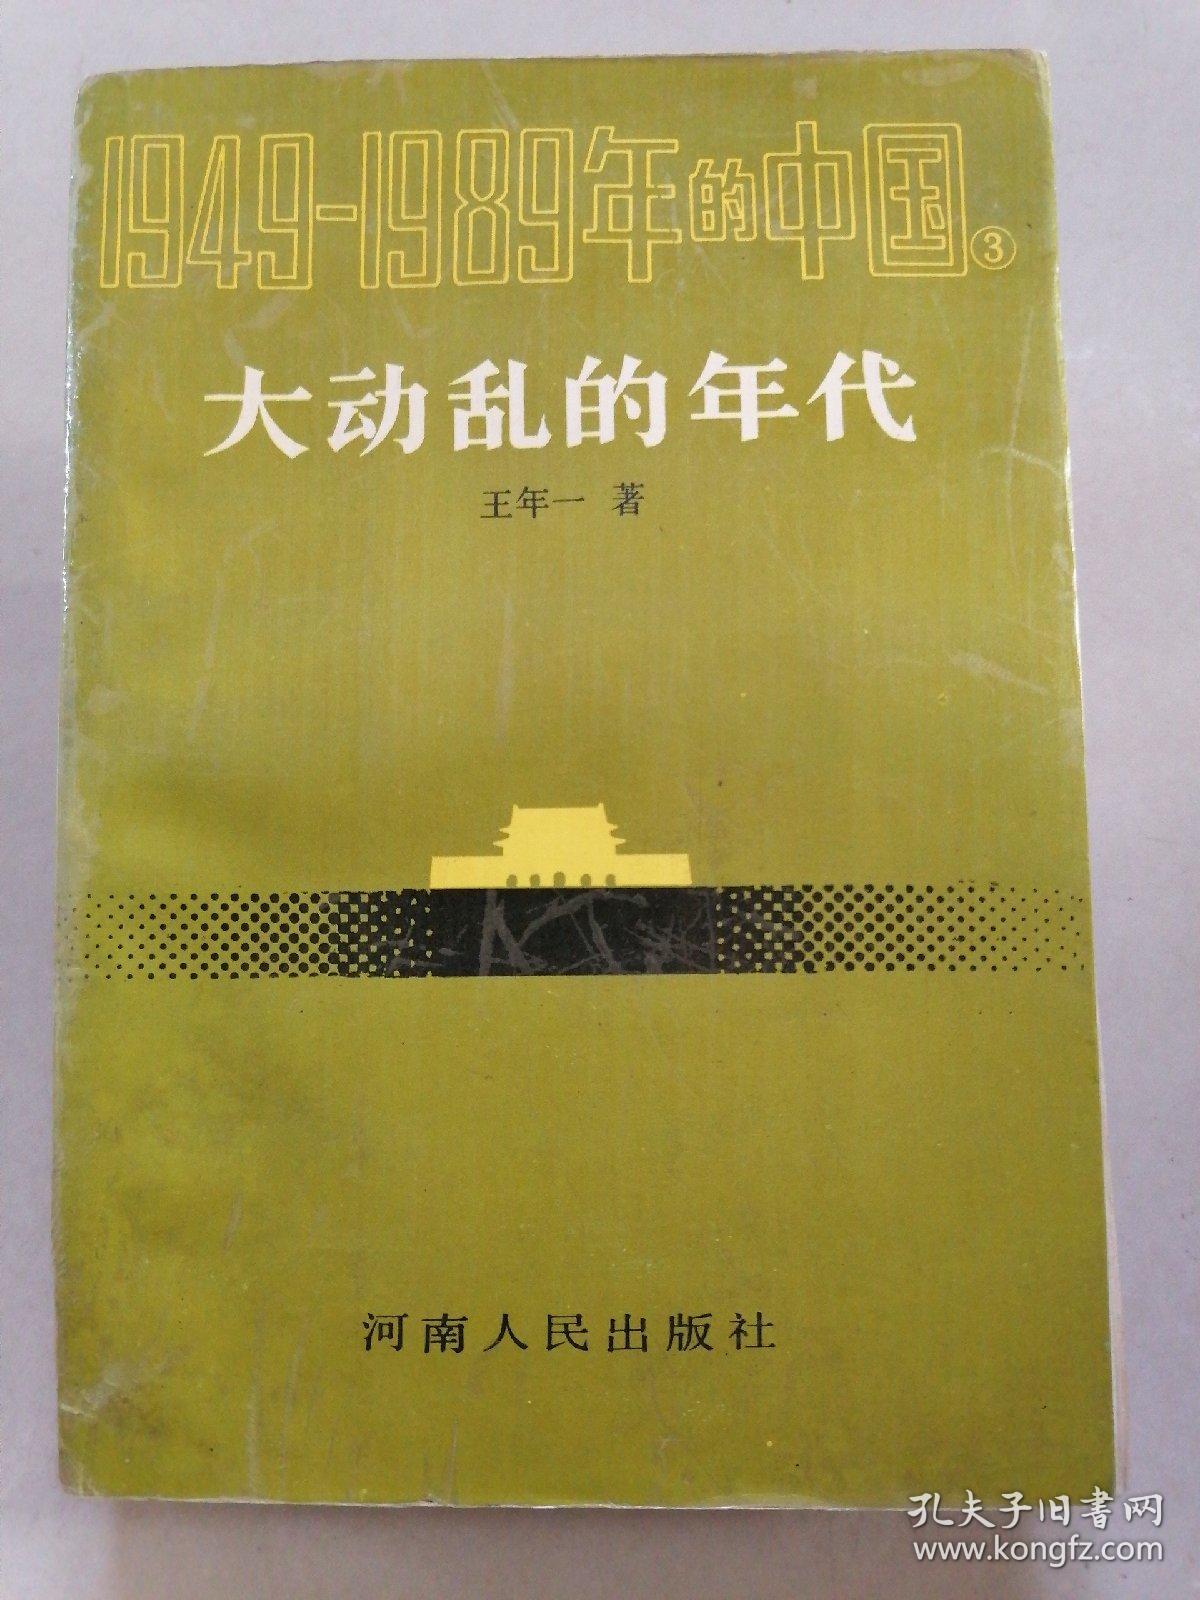 1949-1989年的中国